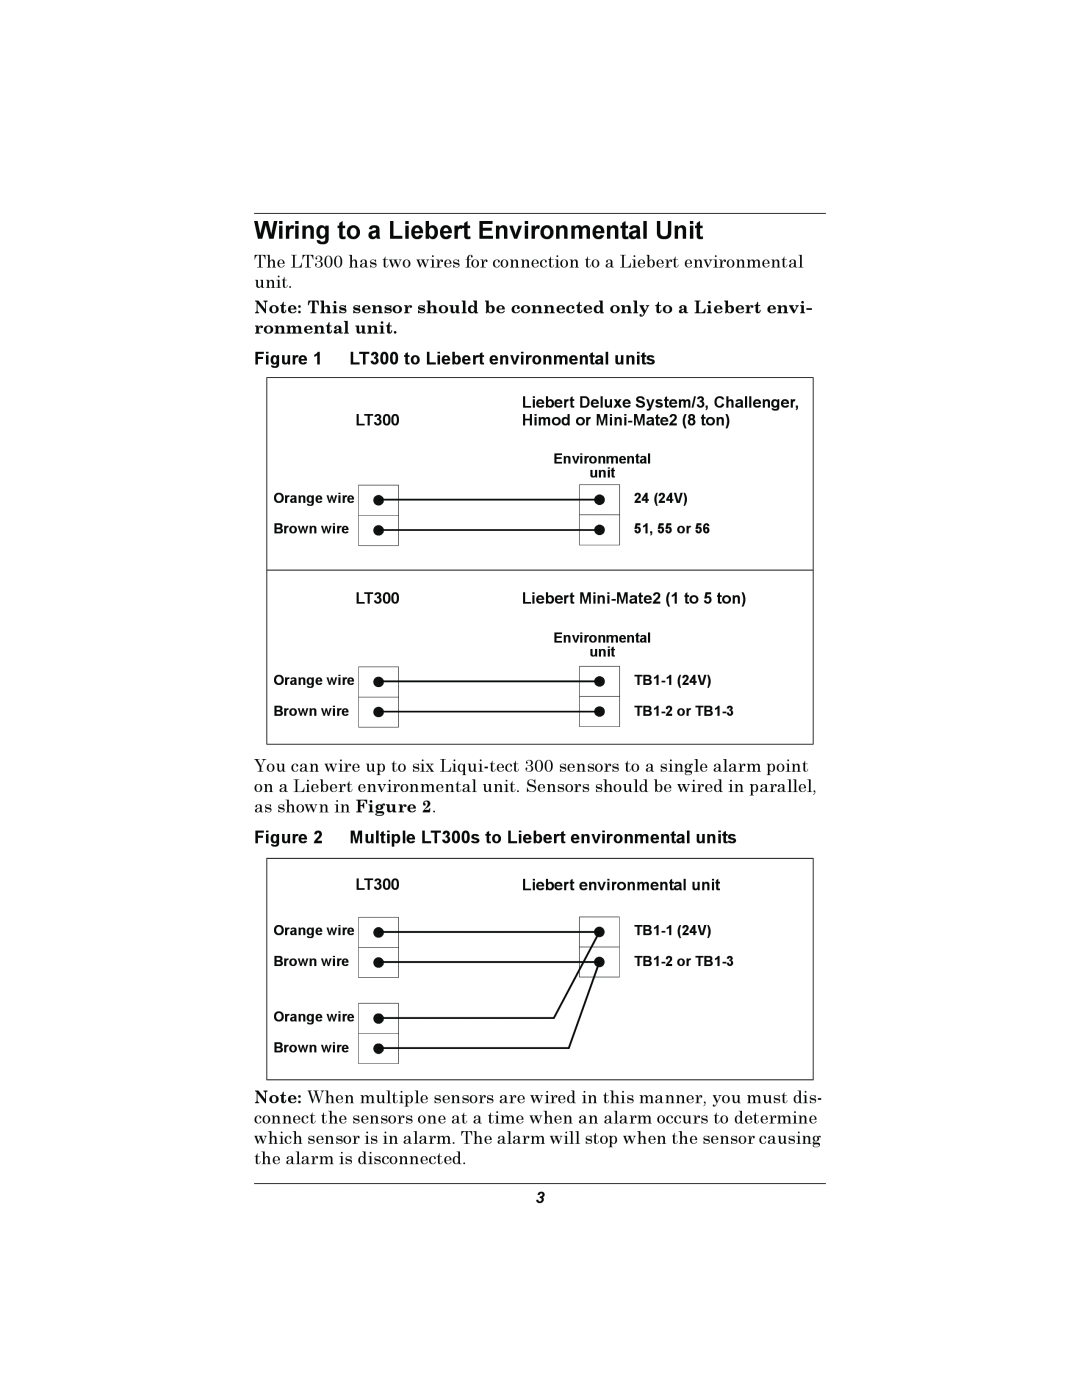 Liebert installation manual Wiring to a Liebert Environmental Unit, LT300 to Liebert environmental units 